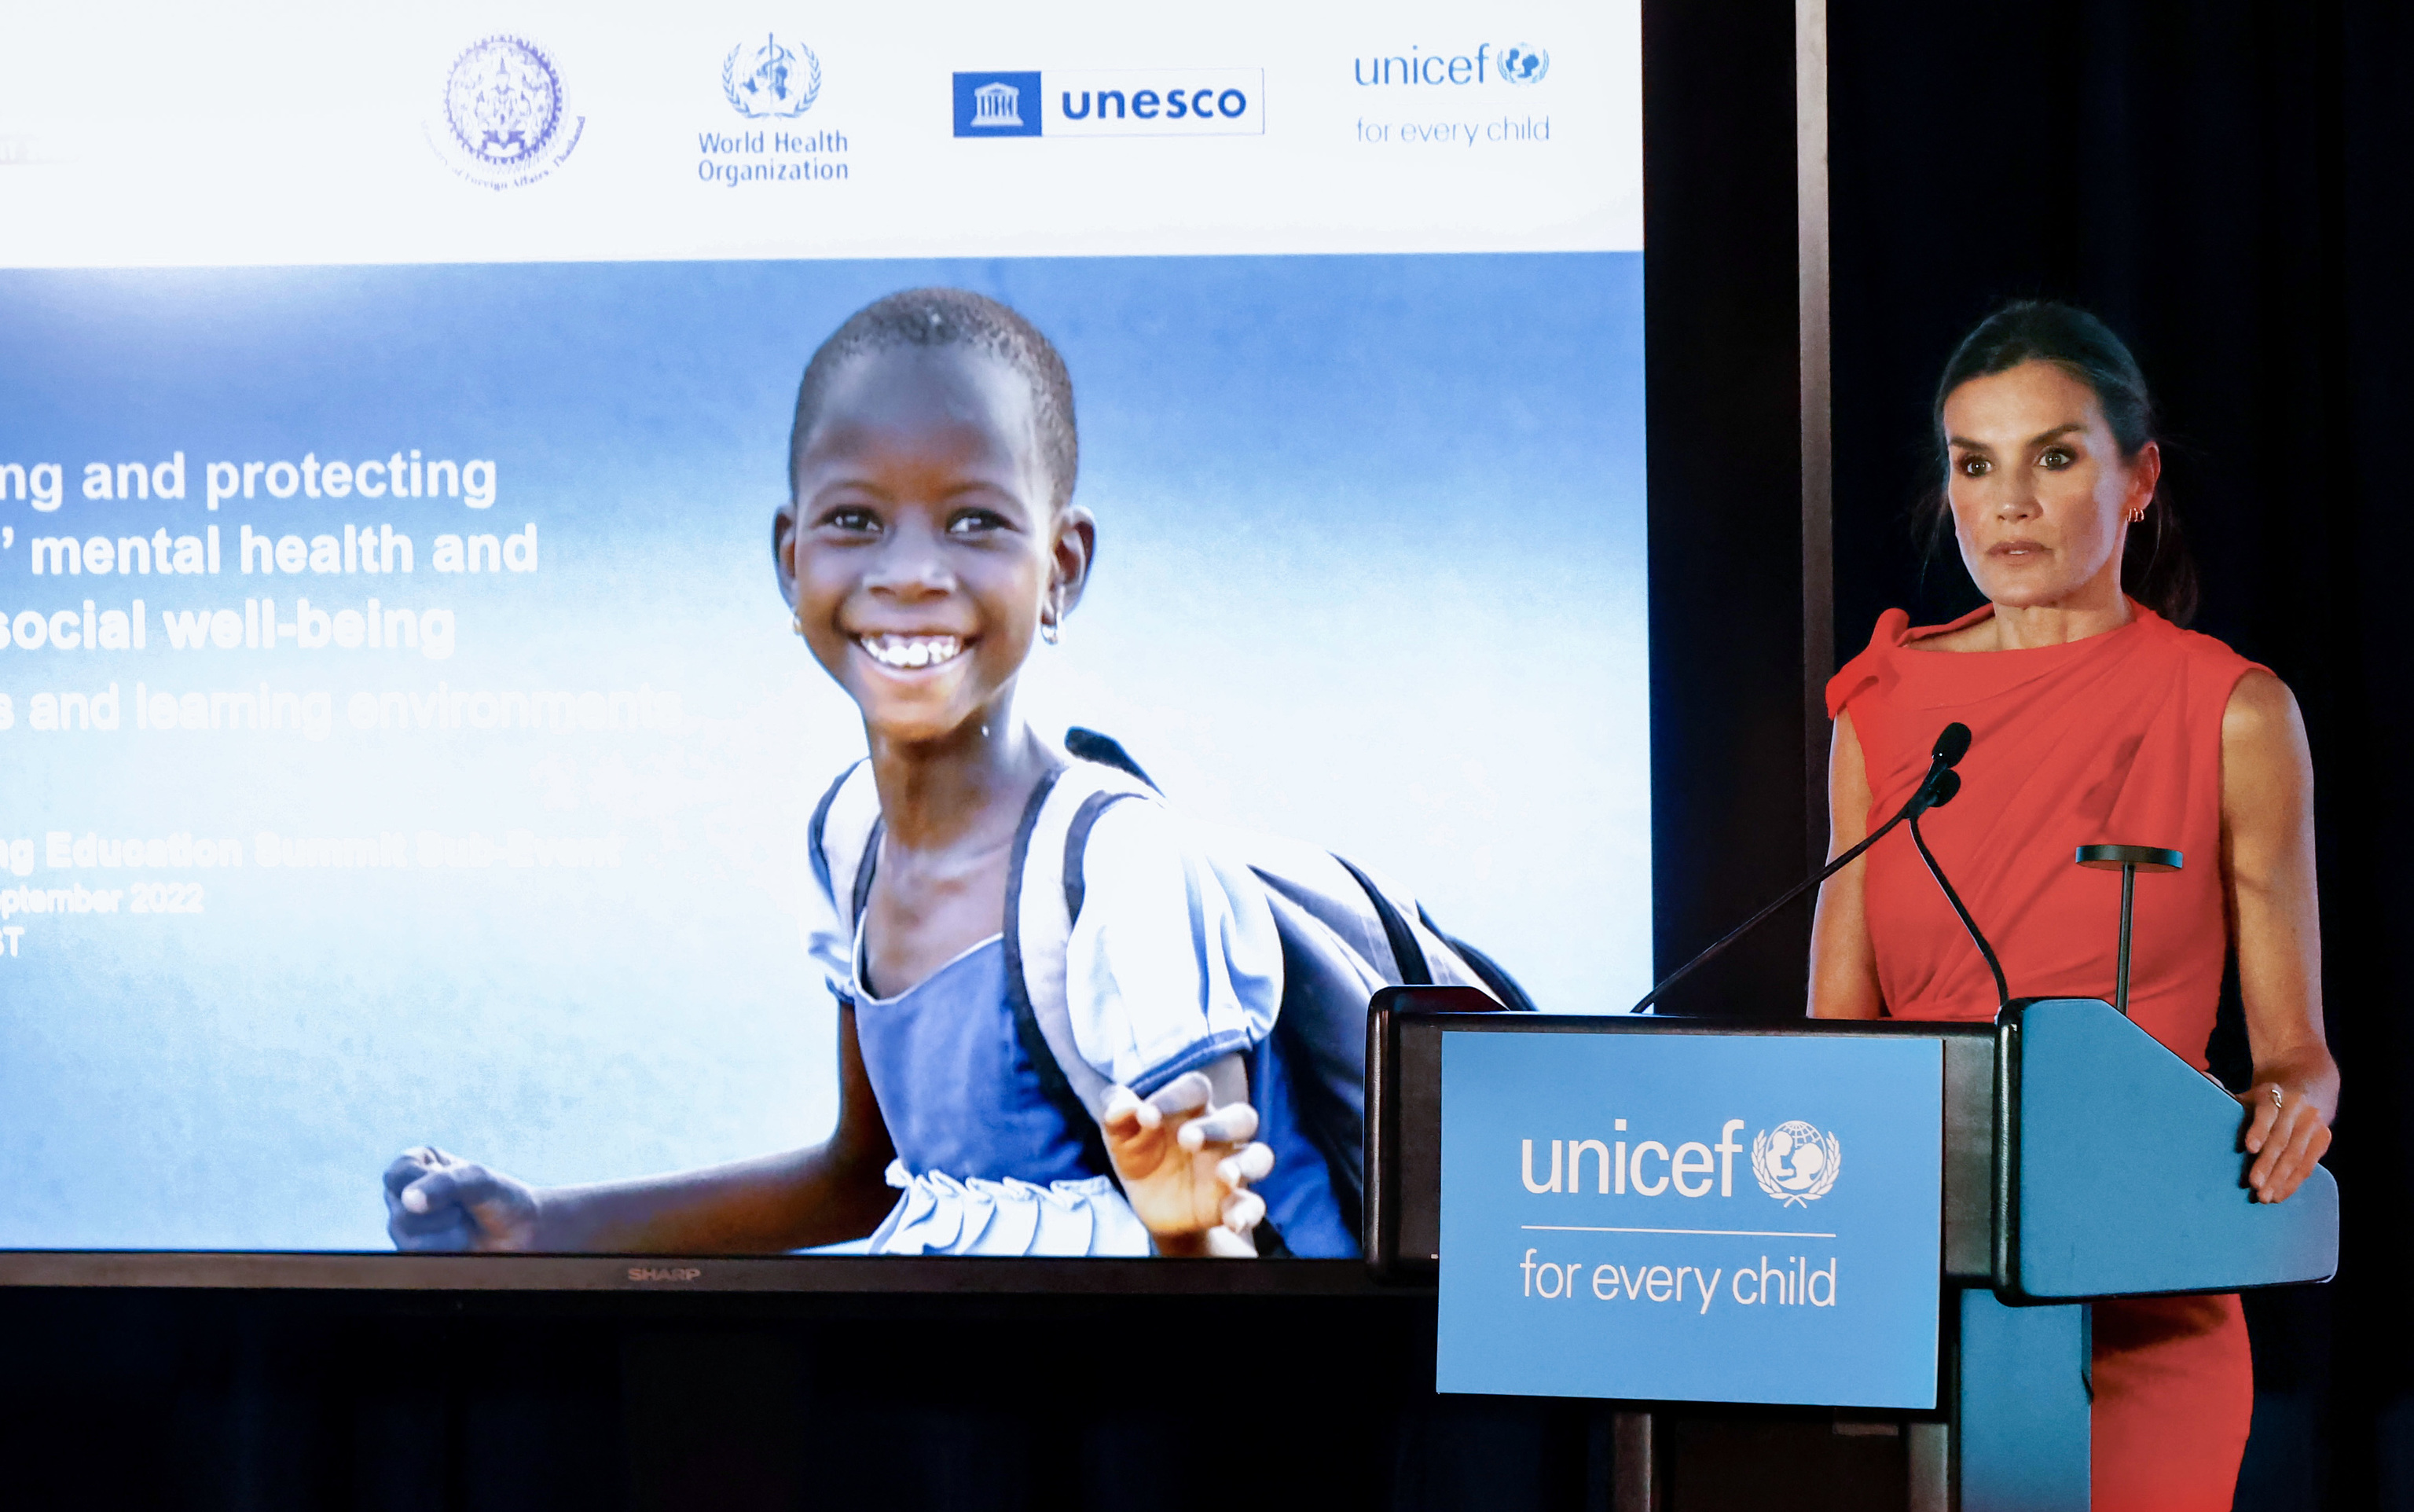 La Reina Letizia durante su participación en el evento organizado por UNICEF y la OMS incluido en la semana de alto nivel de la Asamblea General de las Naciones Unidas y la cumbre del secretario general para la transformación de la educación, hoy martes en Nueva York.